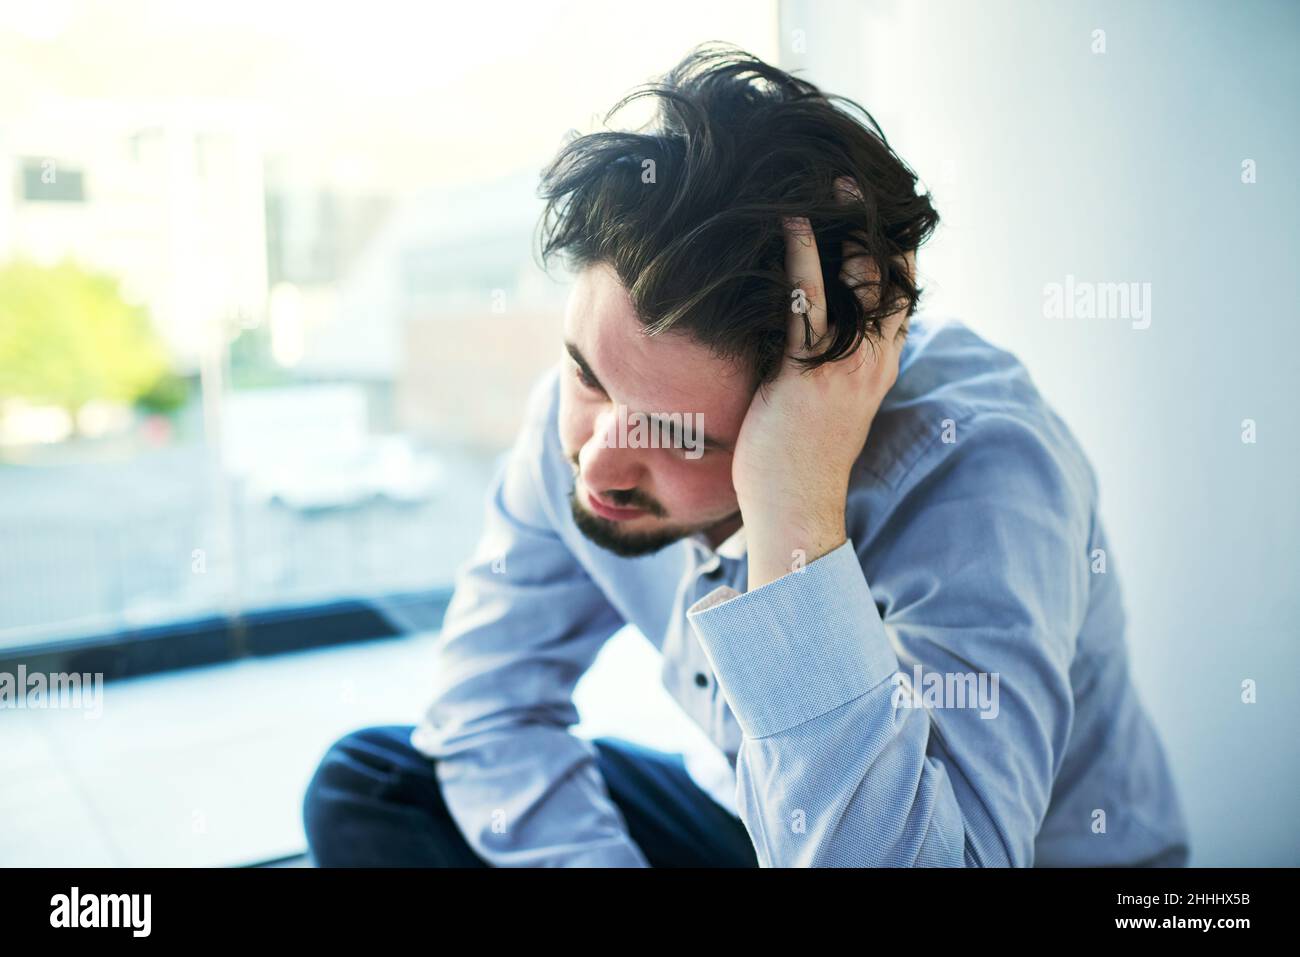 Gefangen gehalten von seinem Bewusstsein. Aufnahme eines jungen Mannes, der an einem Nervenzusammenbruch leidet. Stockfoto